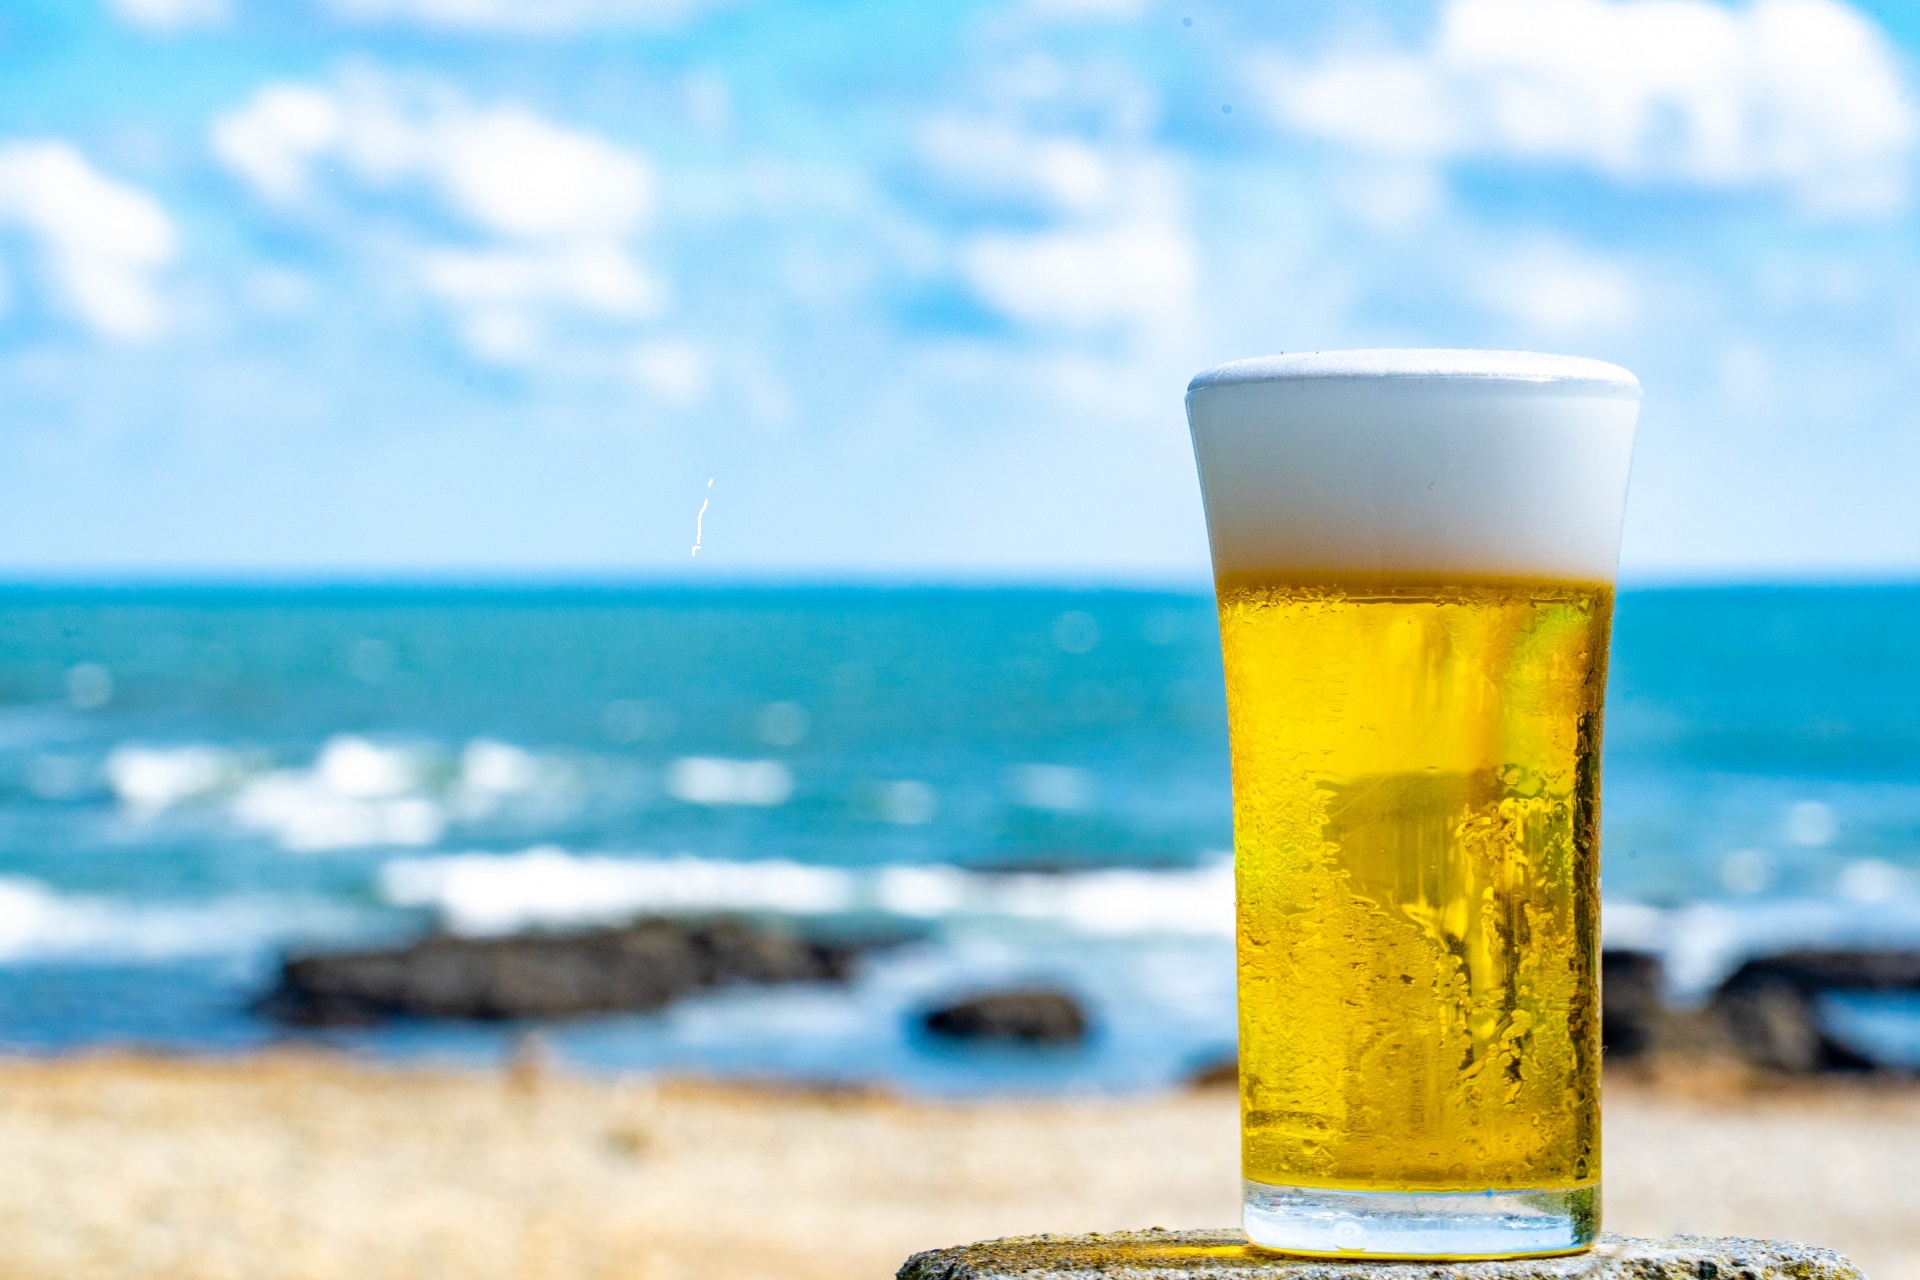 「海を見ながらビールを飲みたい」と男性利用者は言った